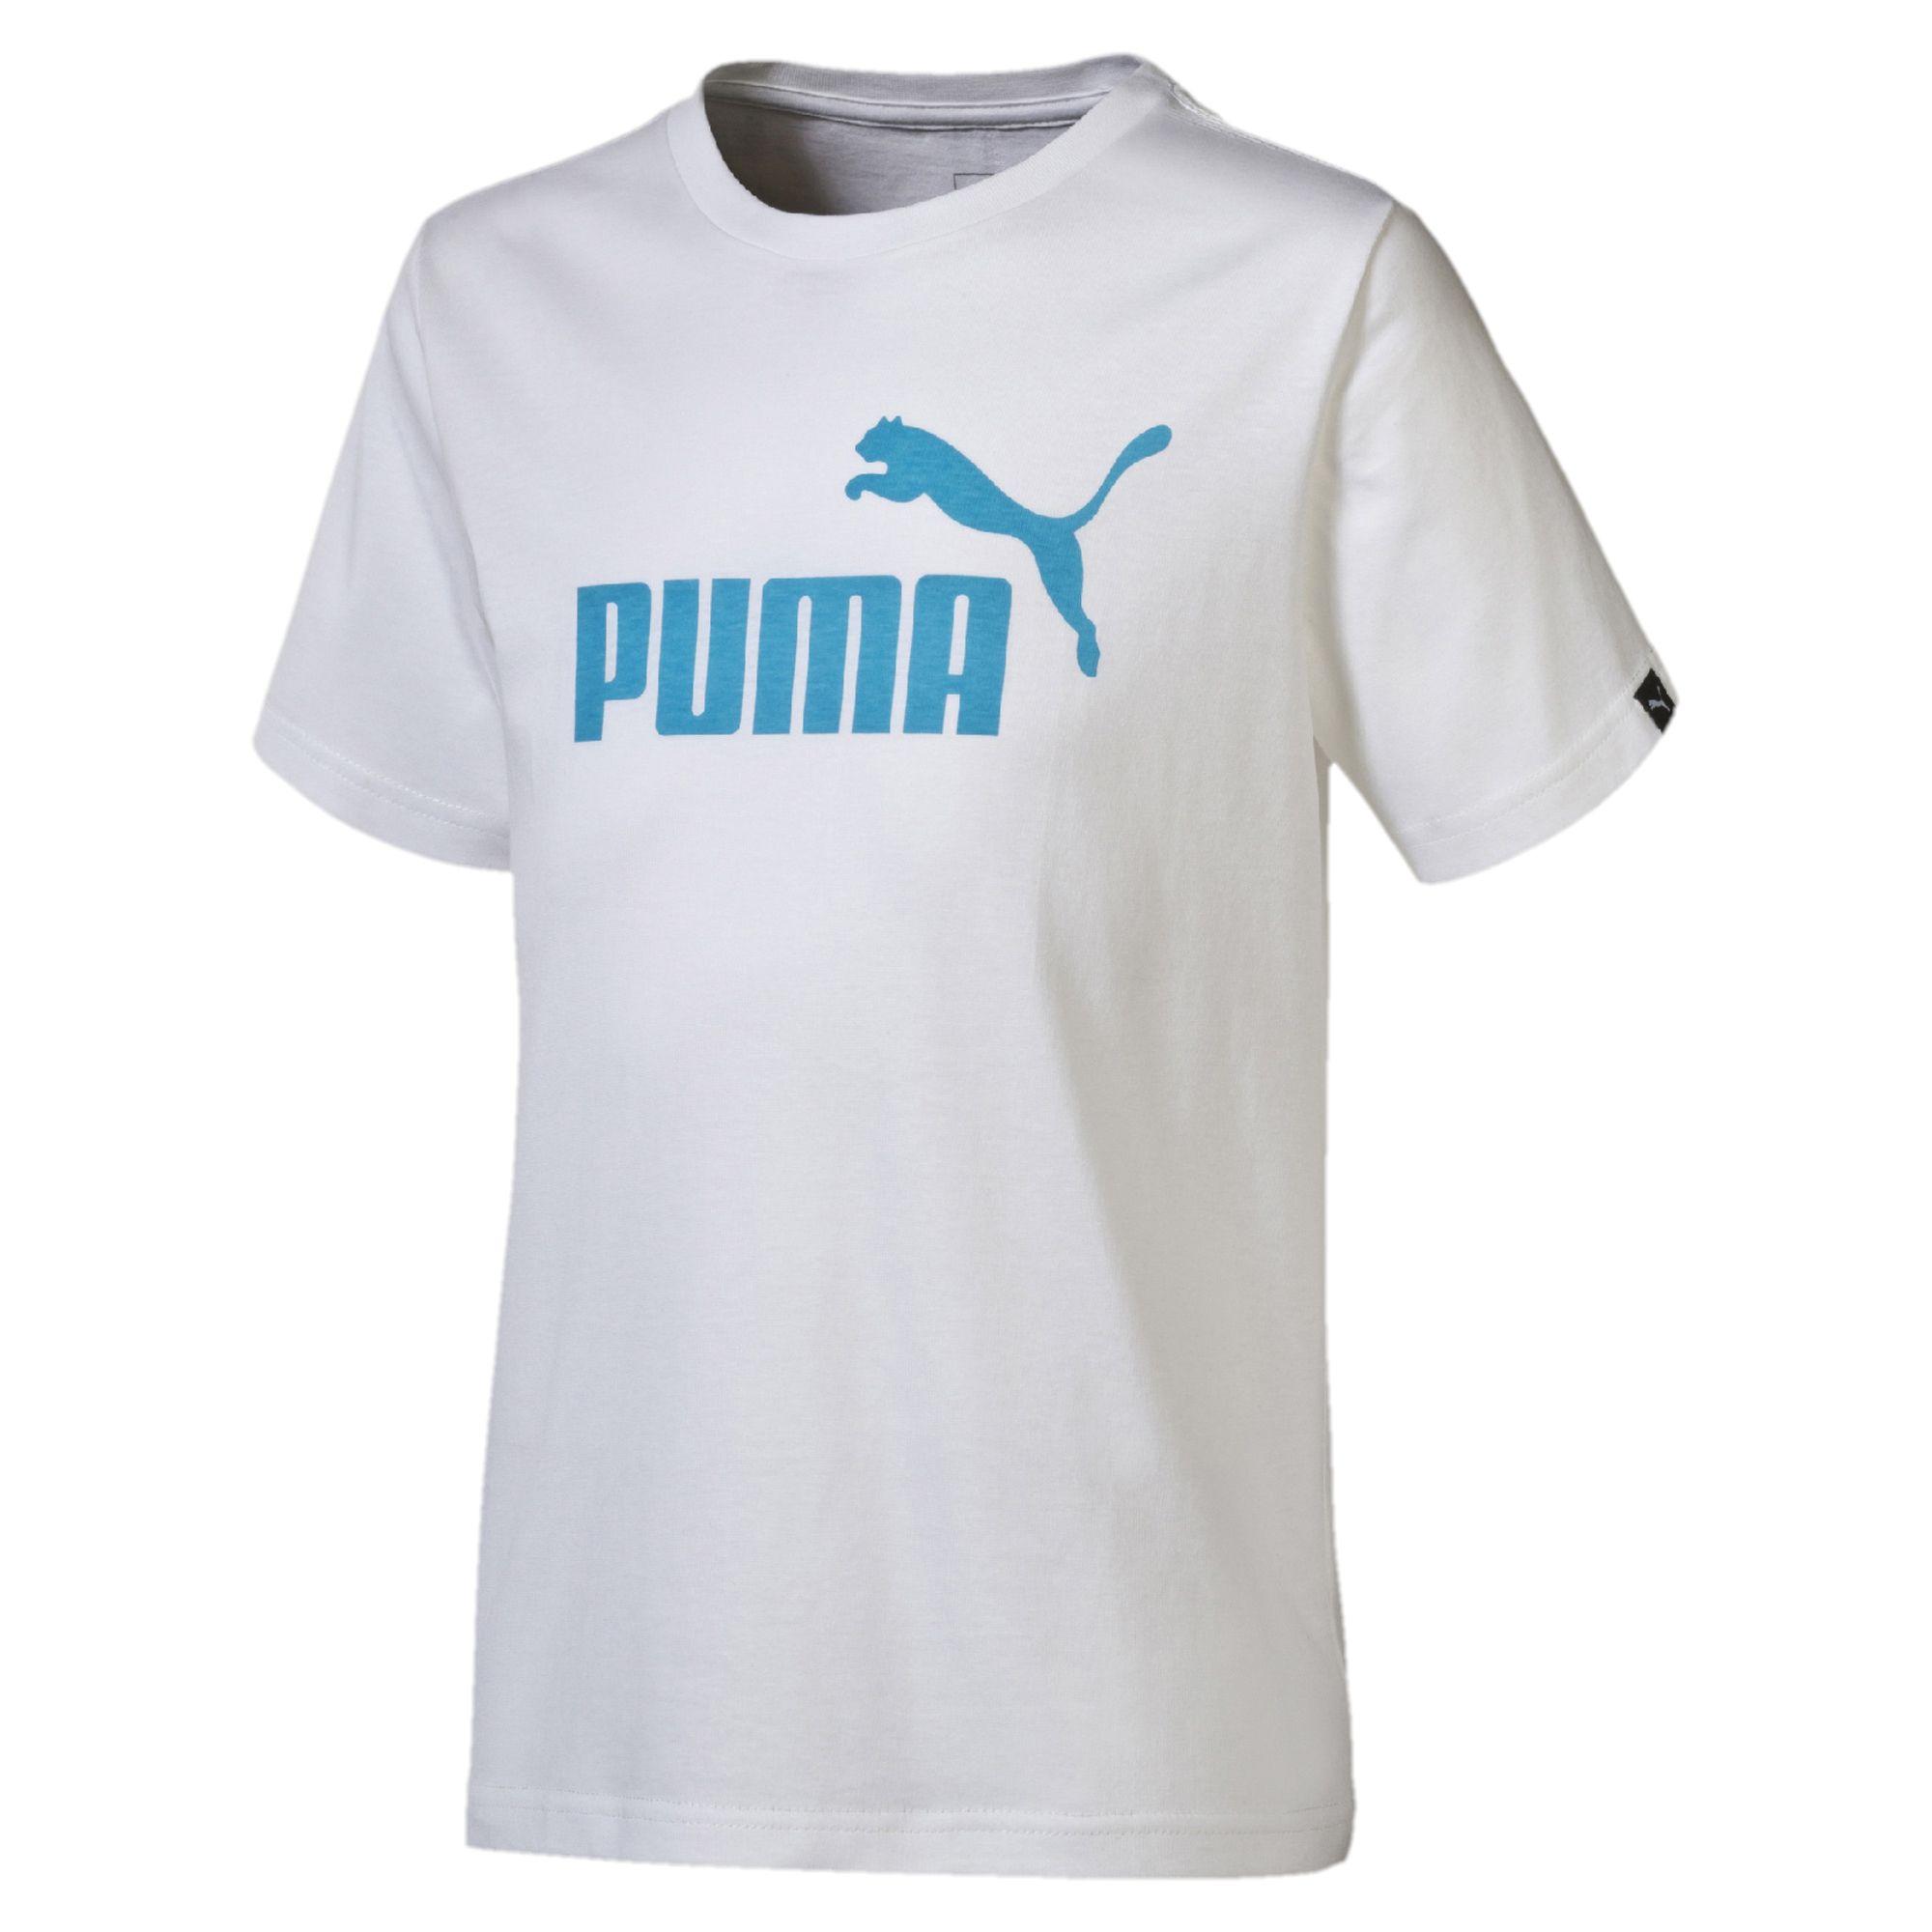 mFGP Logo - Promotions Puma T-Shirt Boys Boys Logo White | MFGP